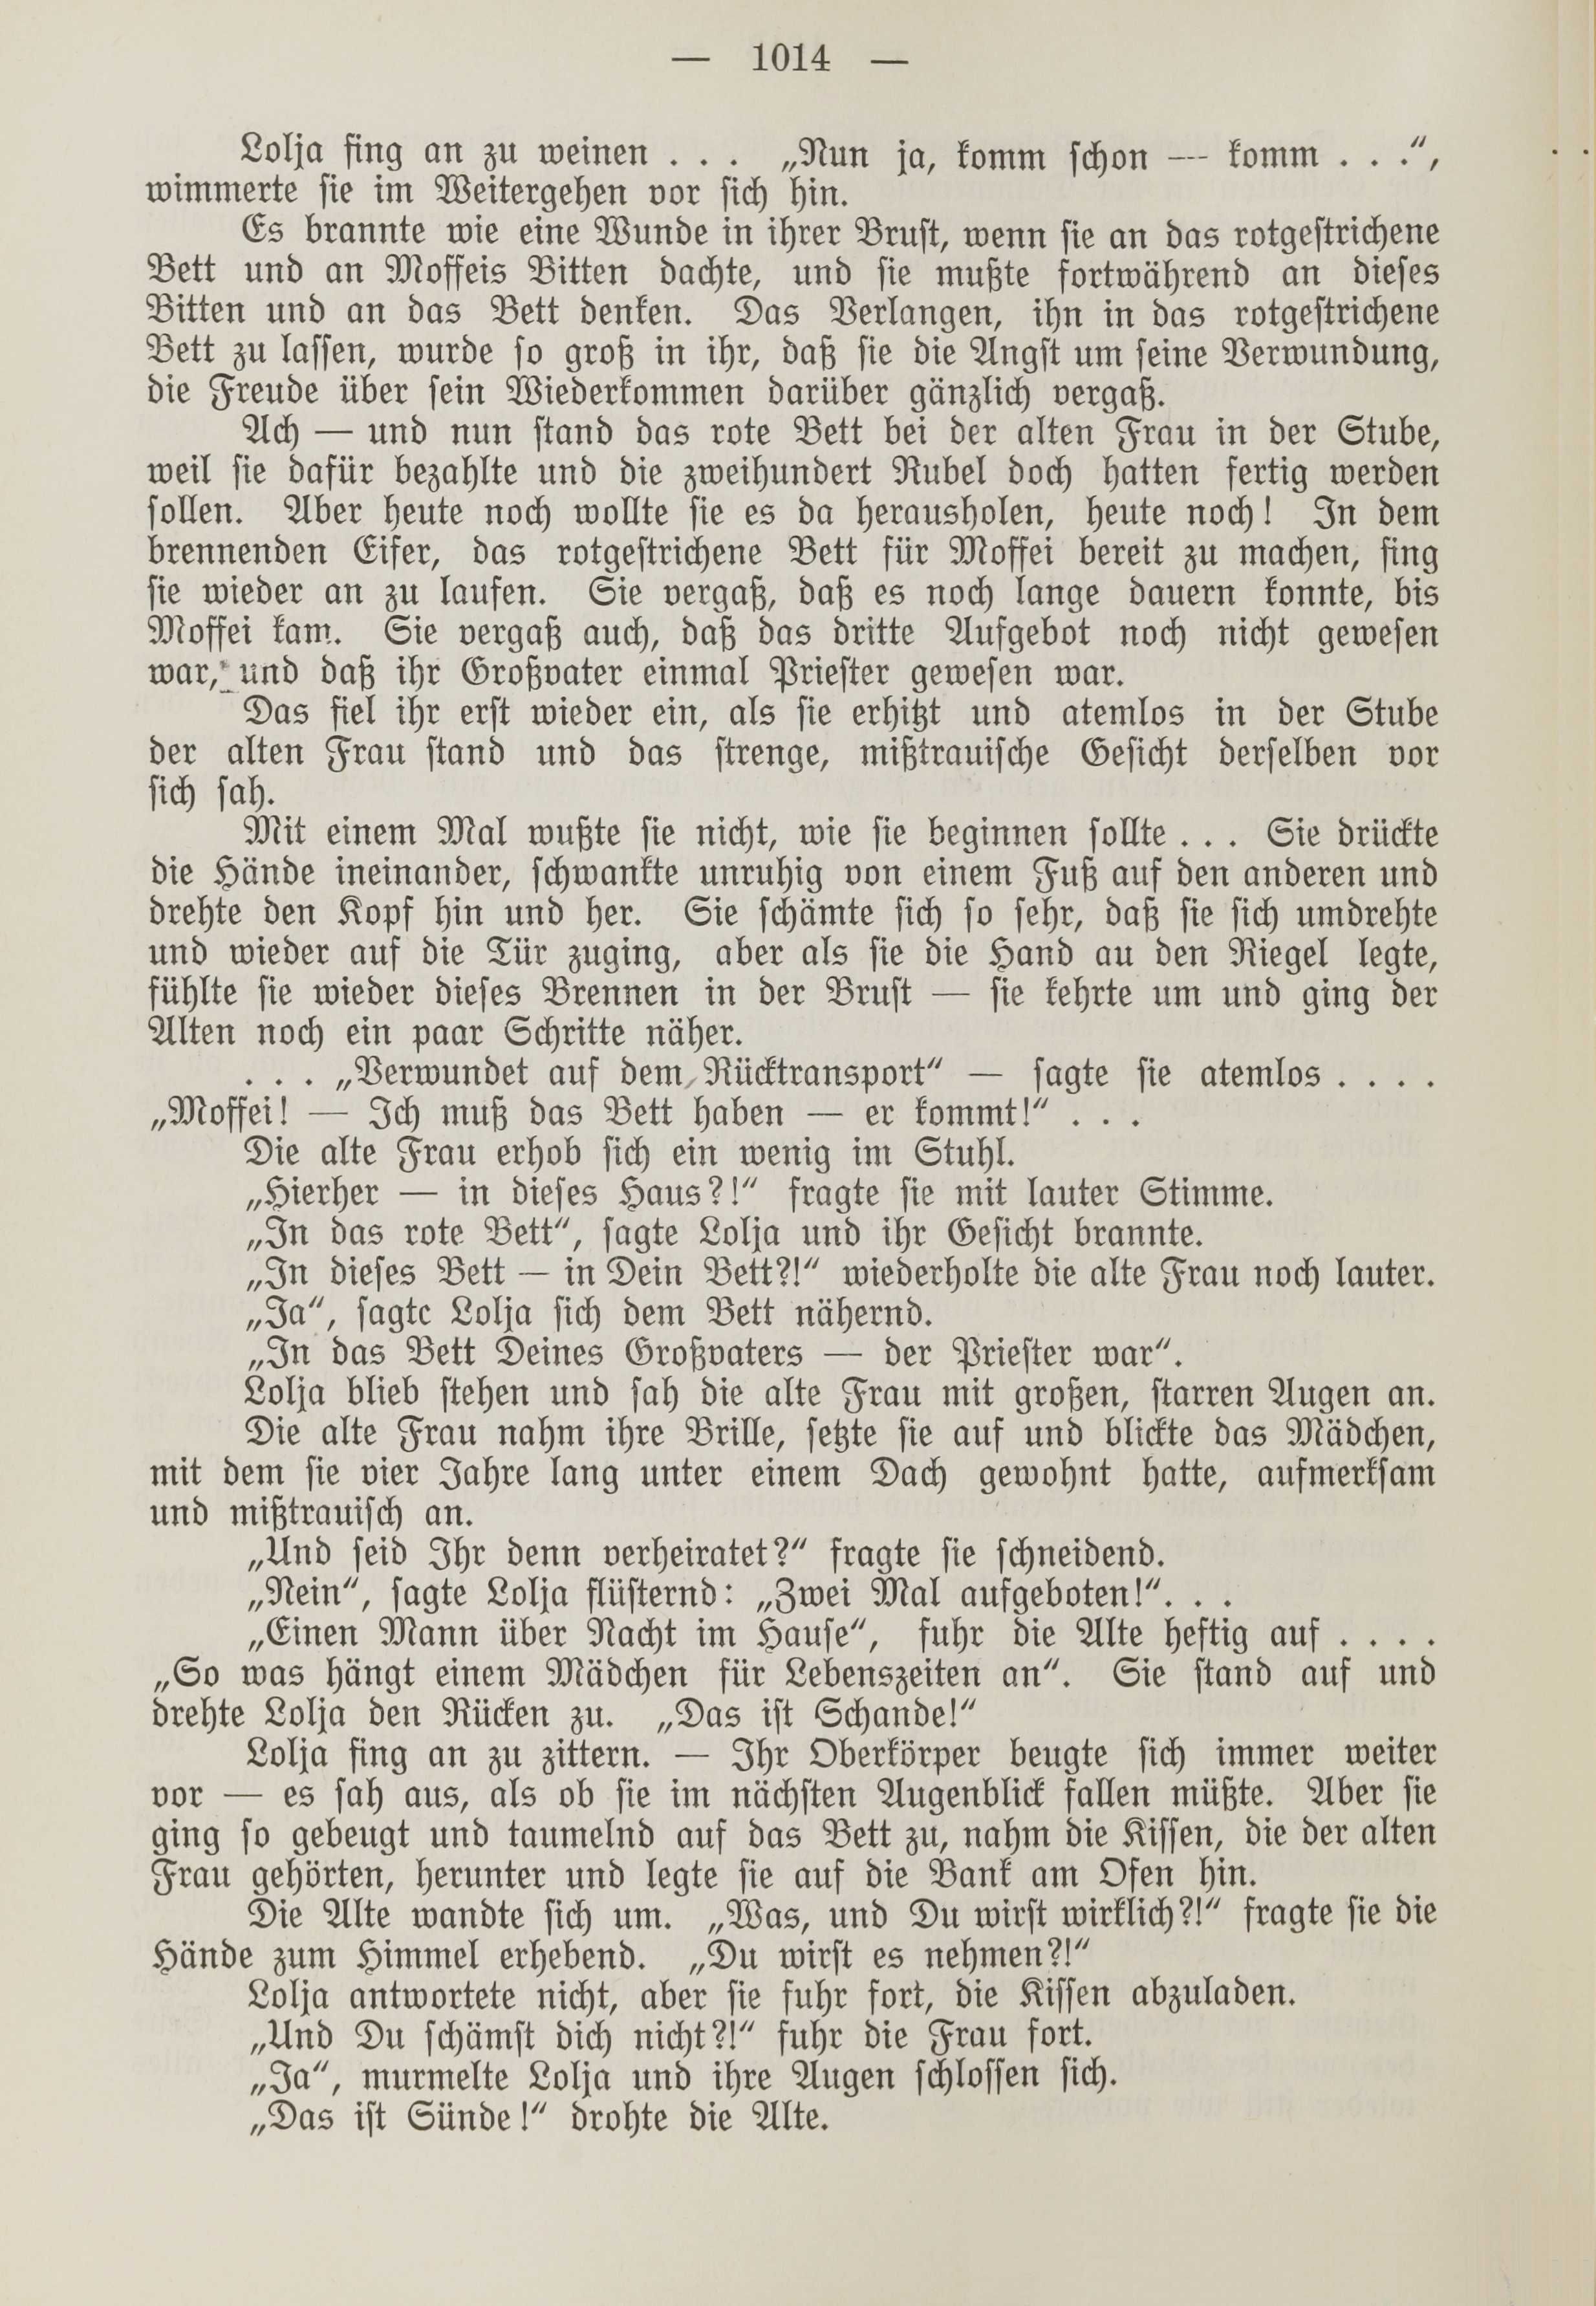 Deutsche Monatsschrift für Russland [1] (1912) | 1022. (1014) Main body of text